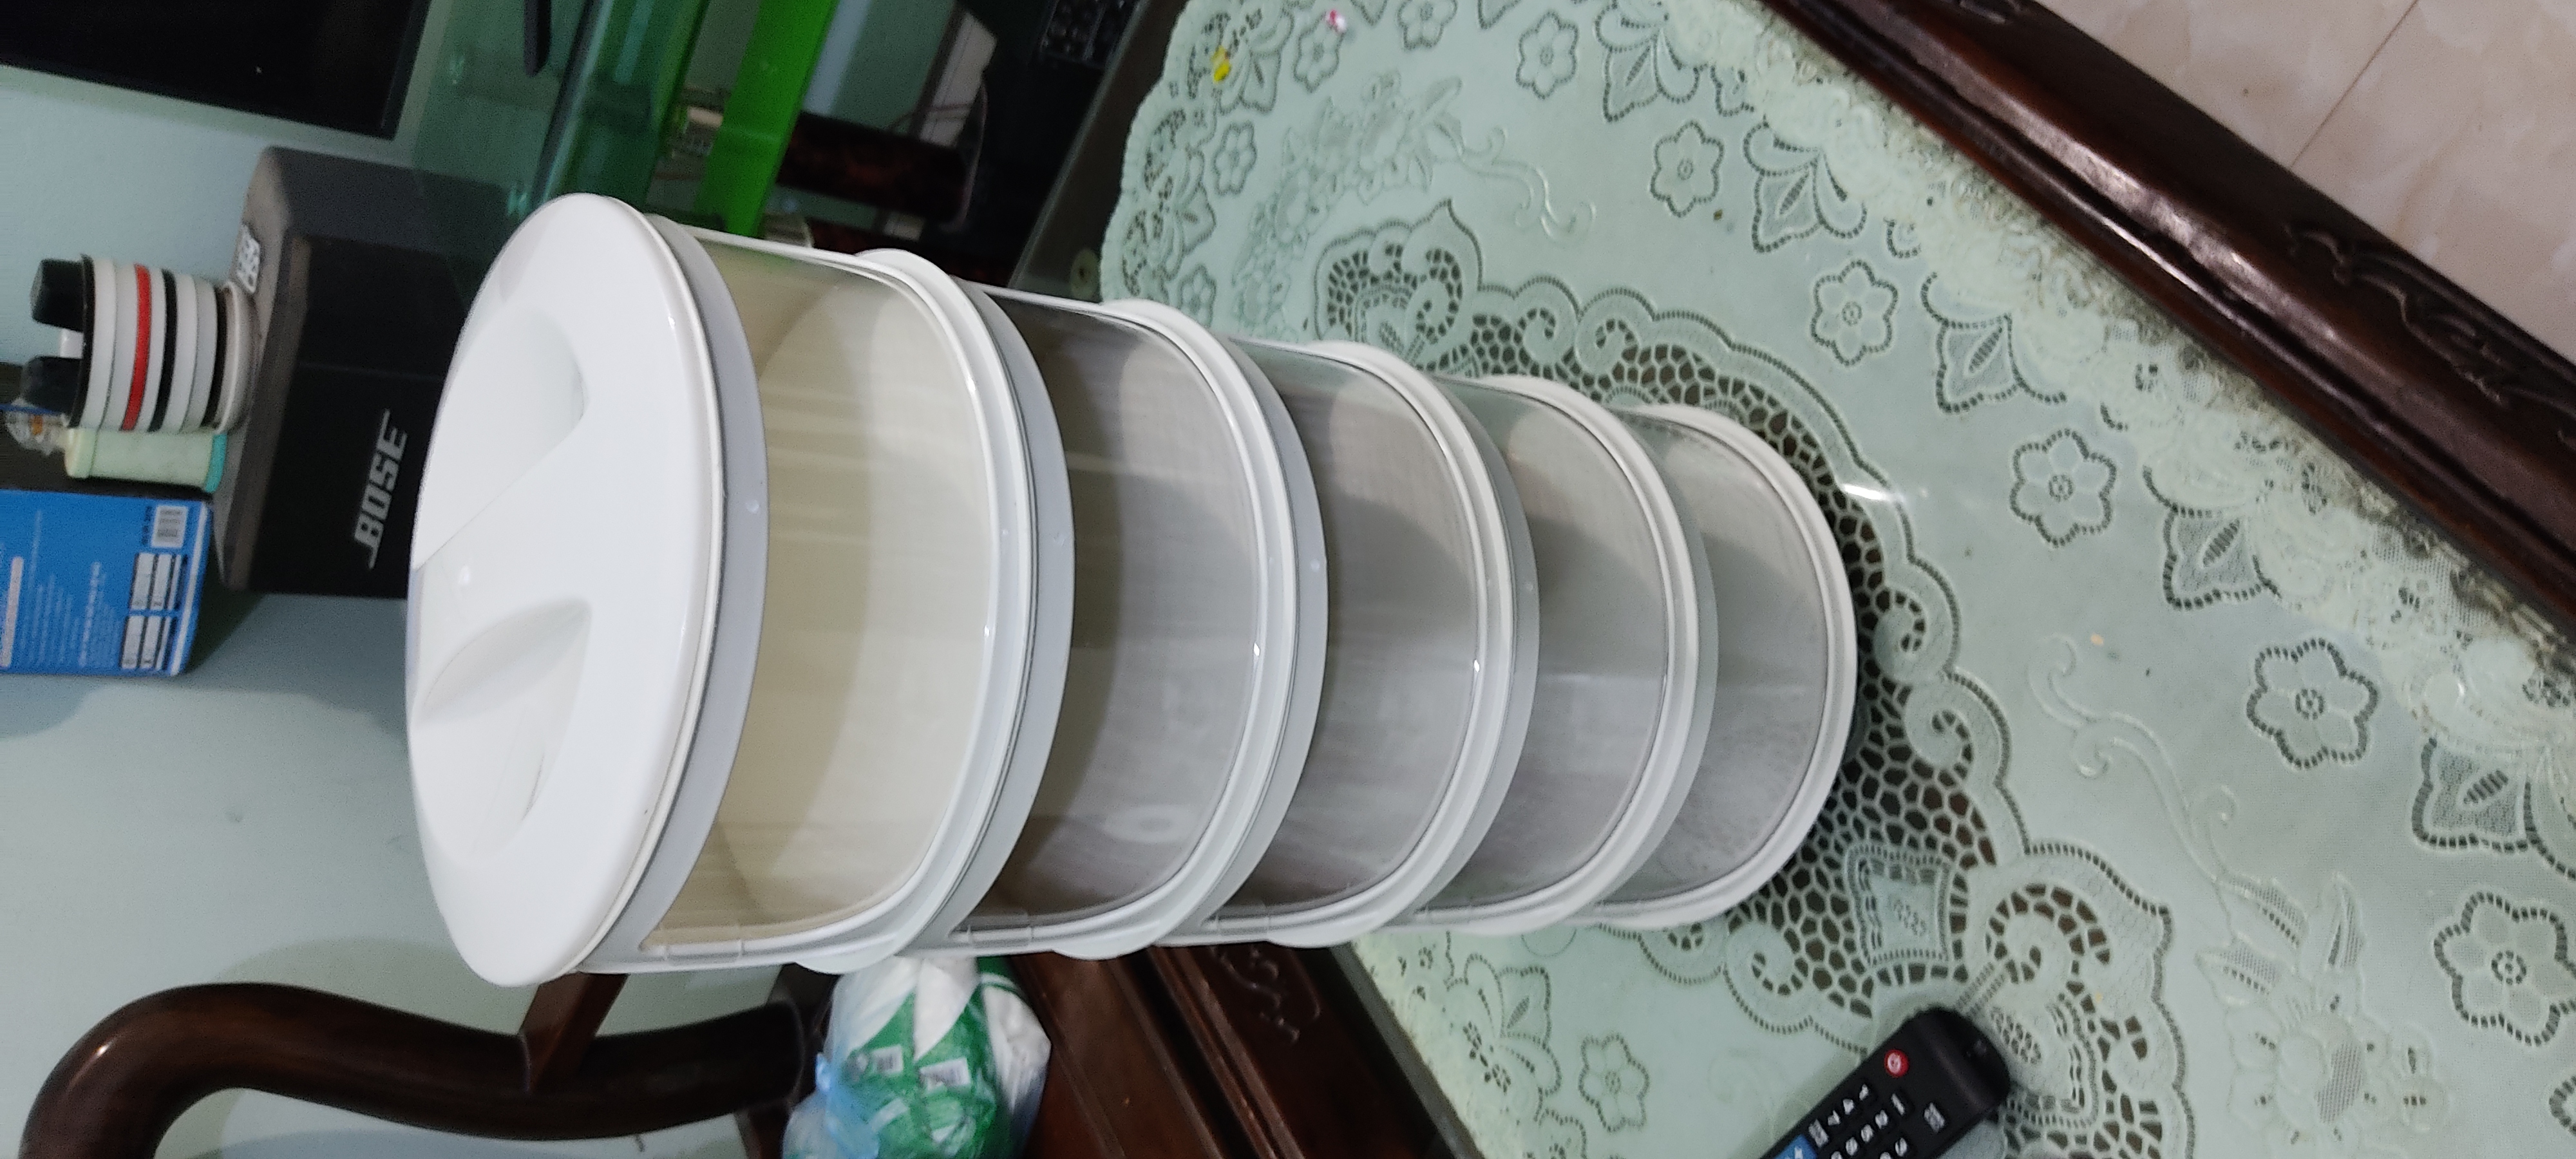 Lồng bàn 5 tầng đựng thức ăn hàng Việt Nam chất lượng